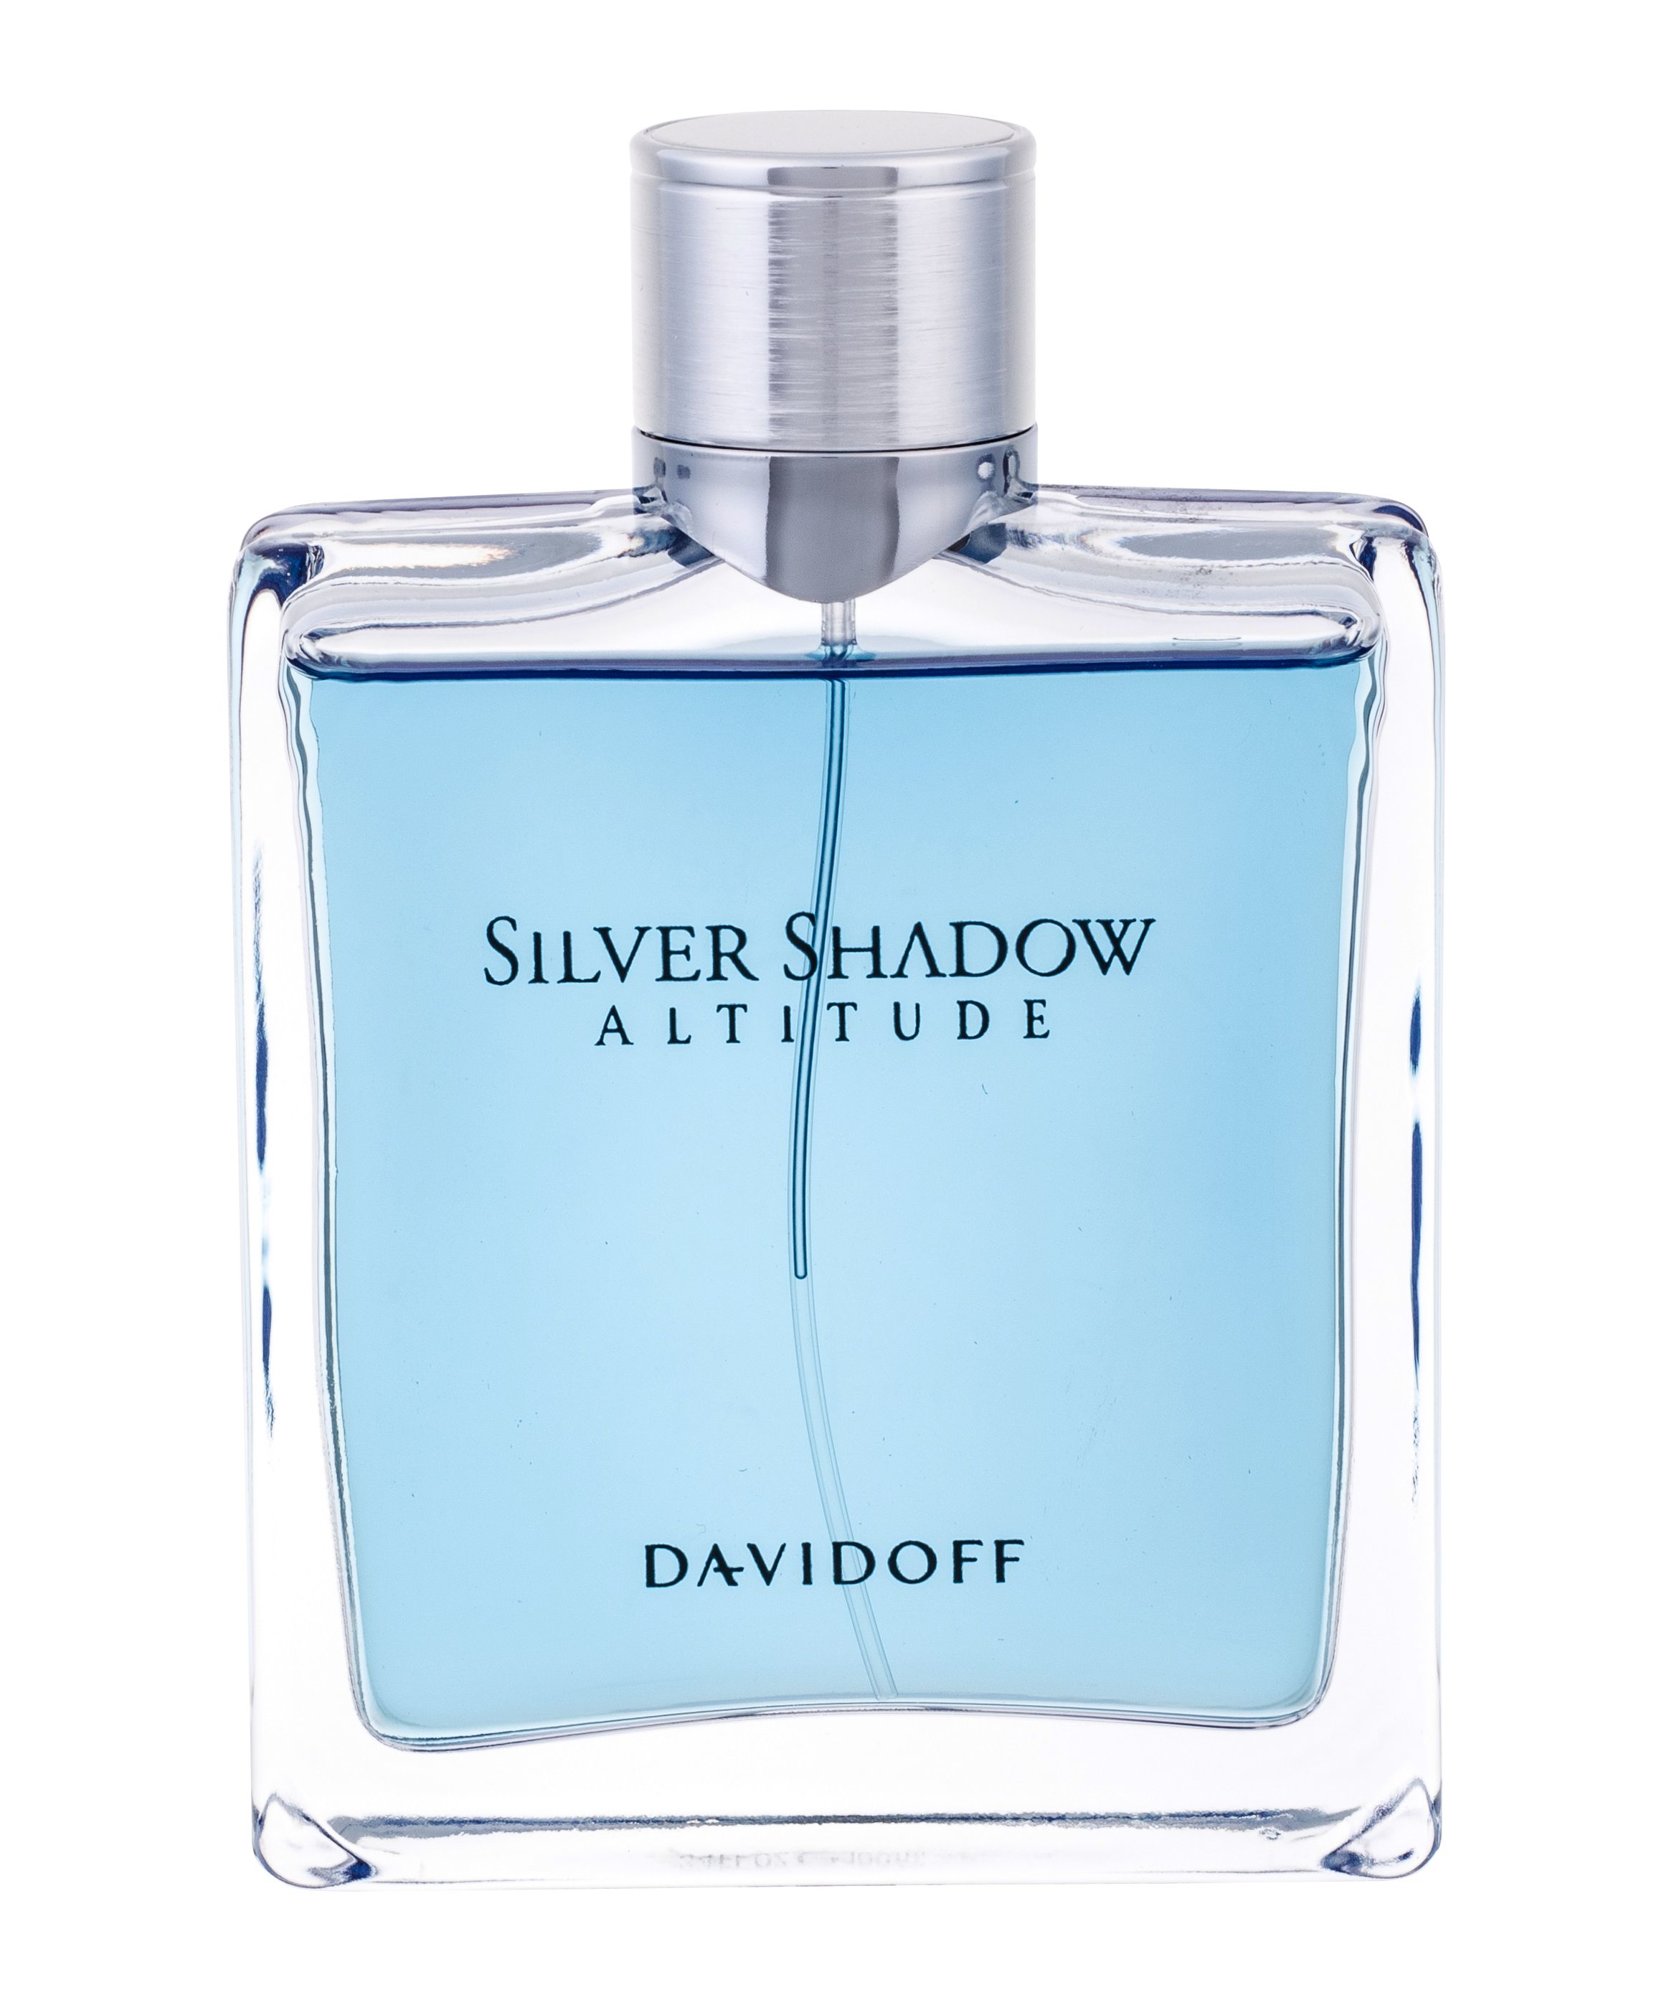 Davidoff Silver Shadow Altitude, Toaletná voda 100ml